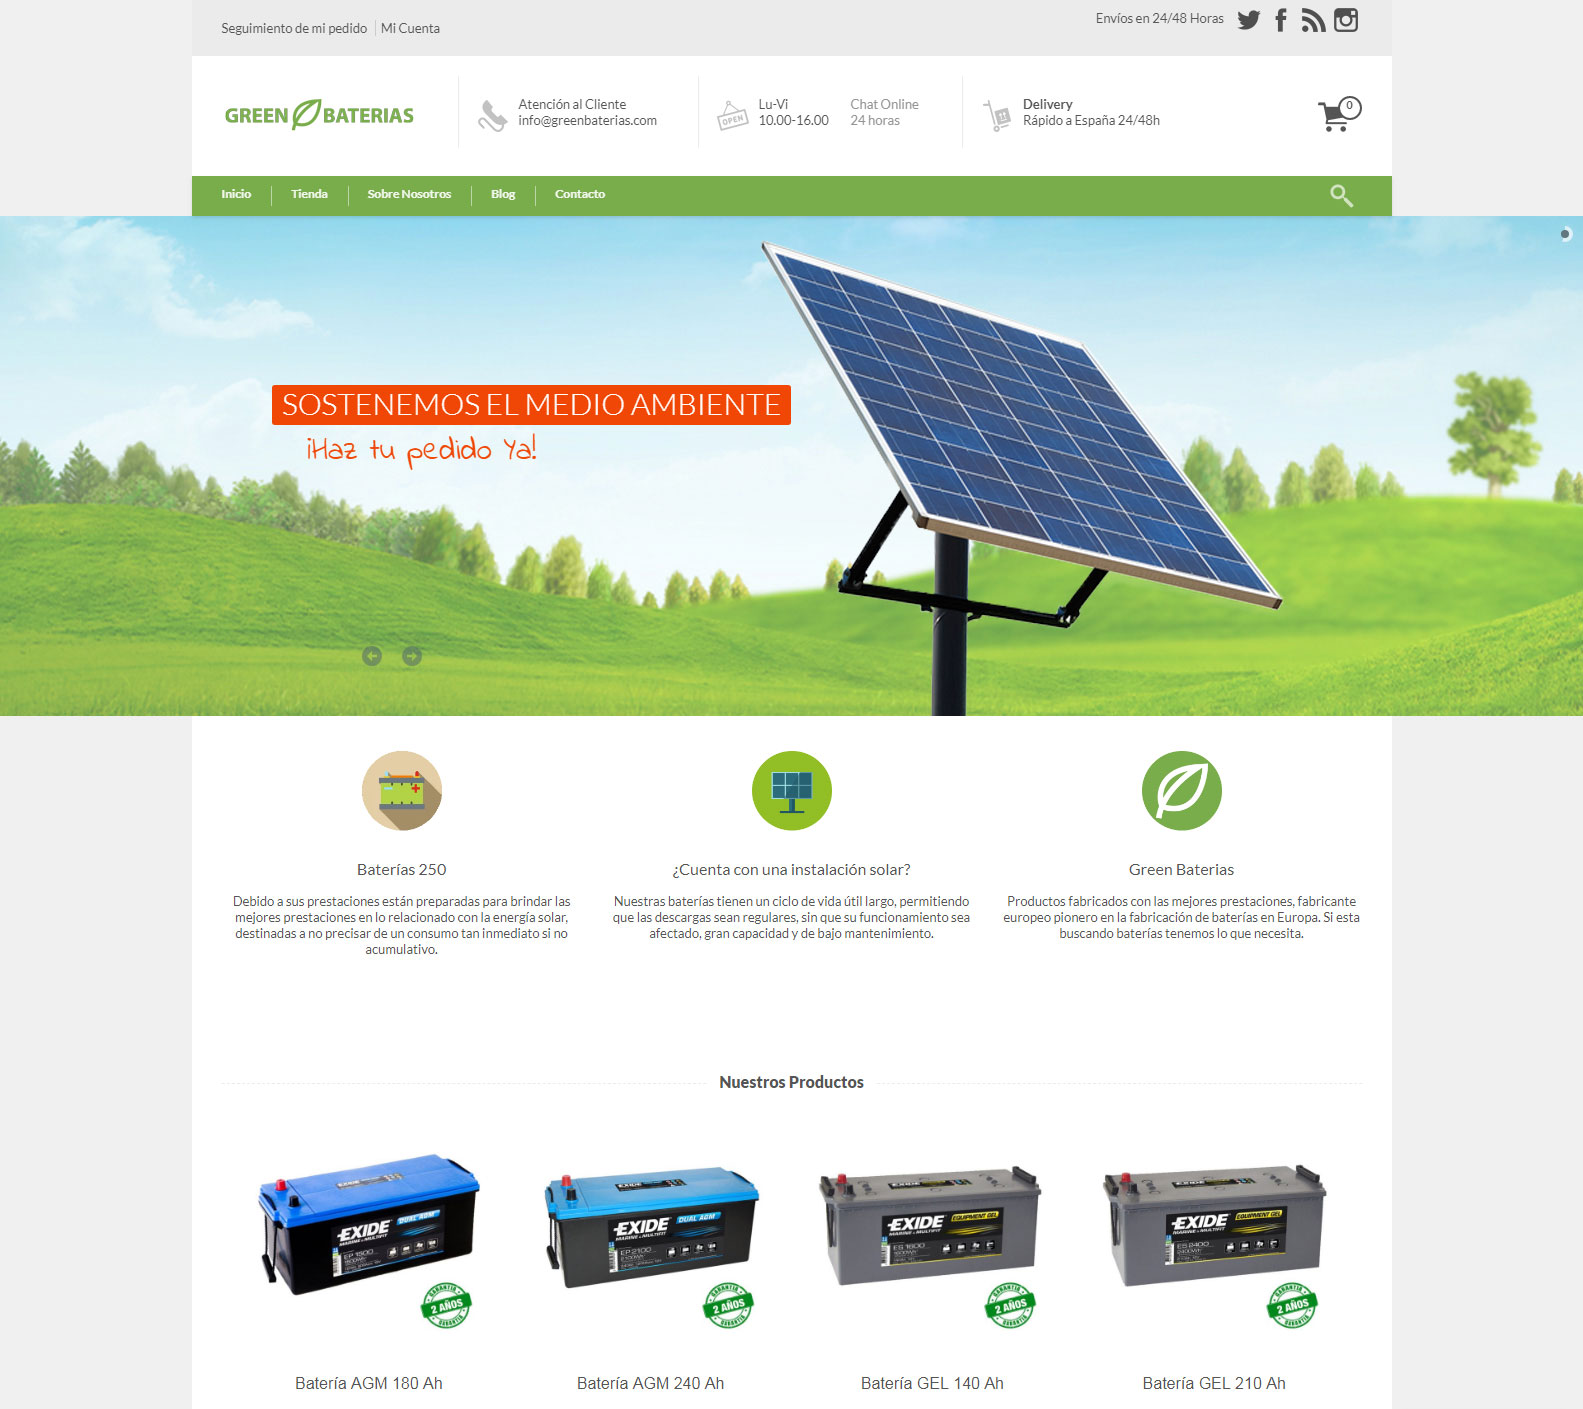 Nueva Tienda Online Green Baterias https://greenbaterias.com/ +Autoadministrable +Tienda Online